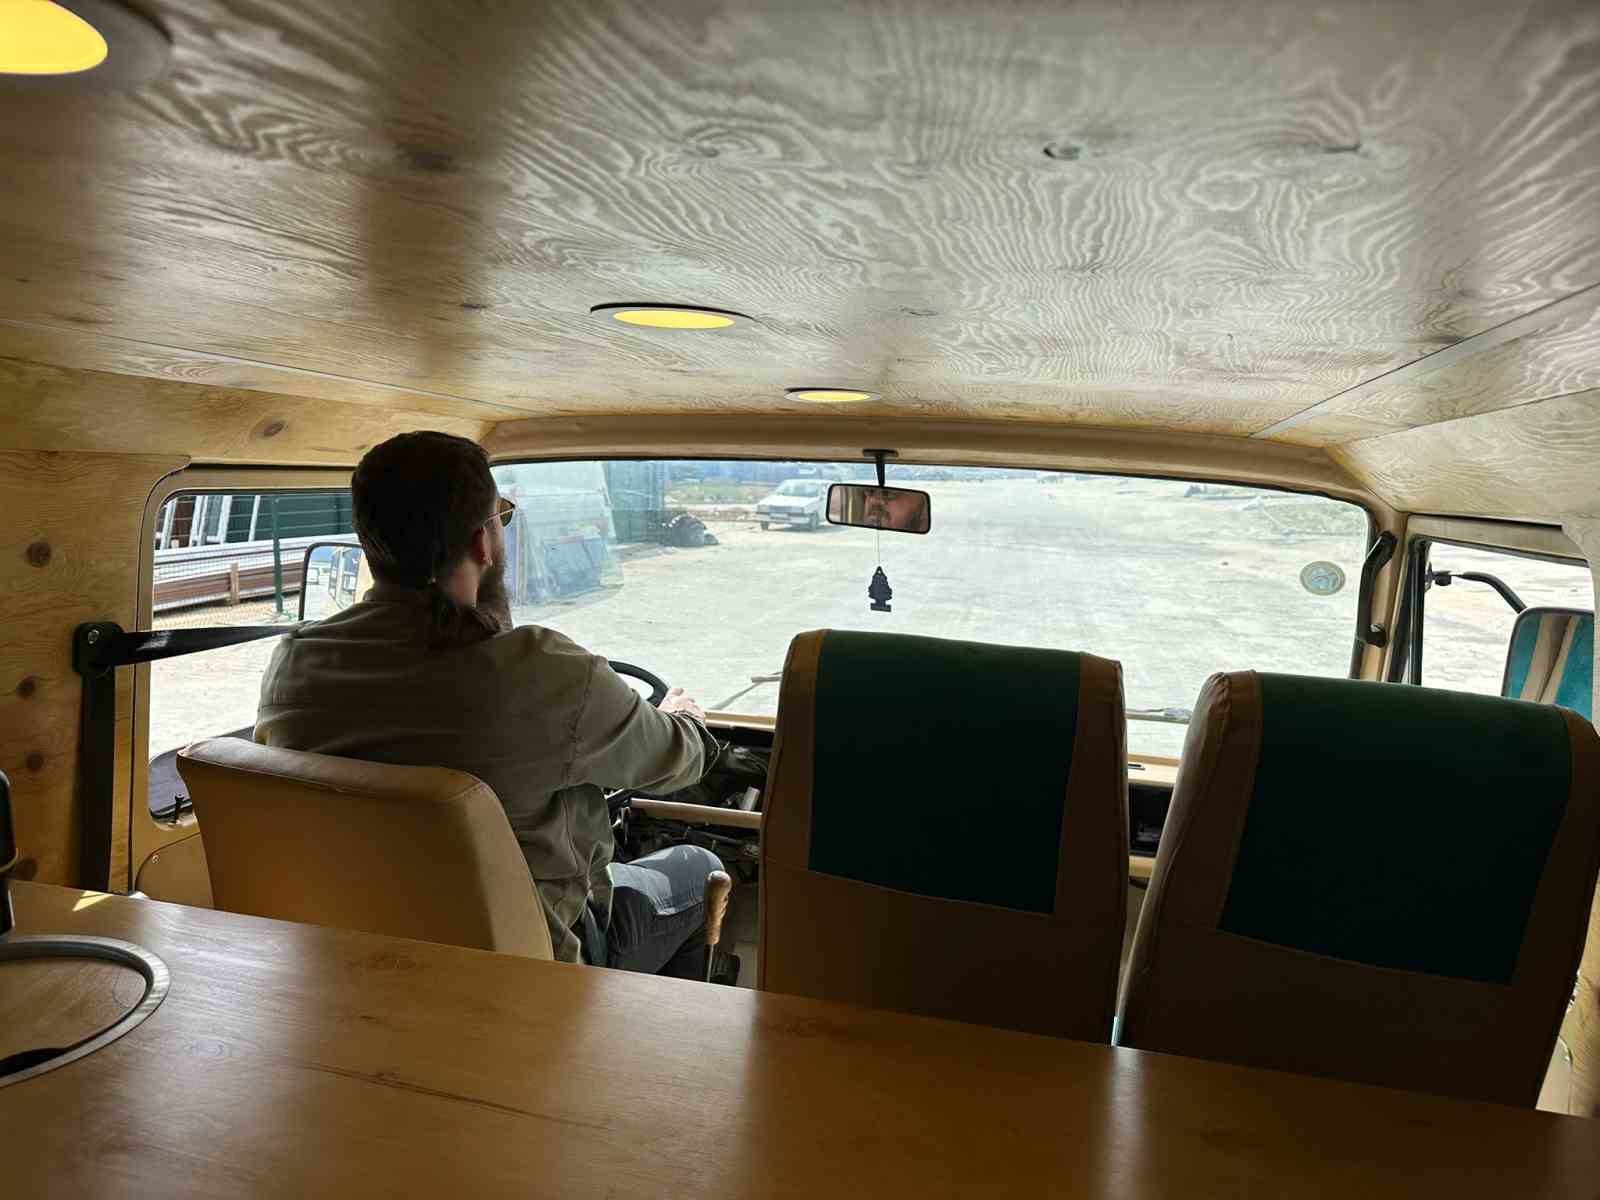 Eskişehir dışına çıkmayan 38 yaşındaki minibüs karavana dönüştü hedefi ülke turu